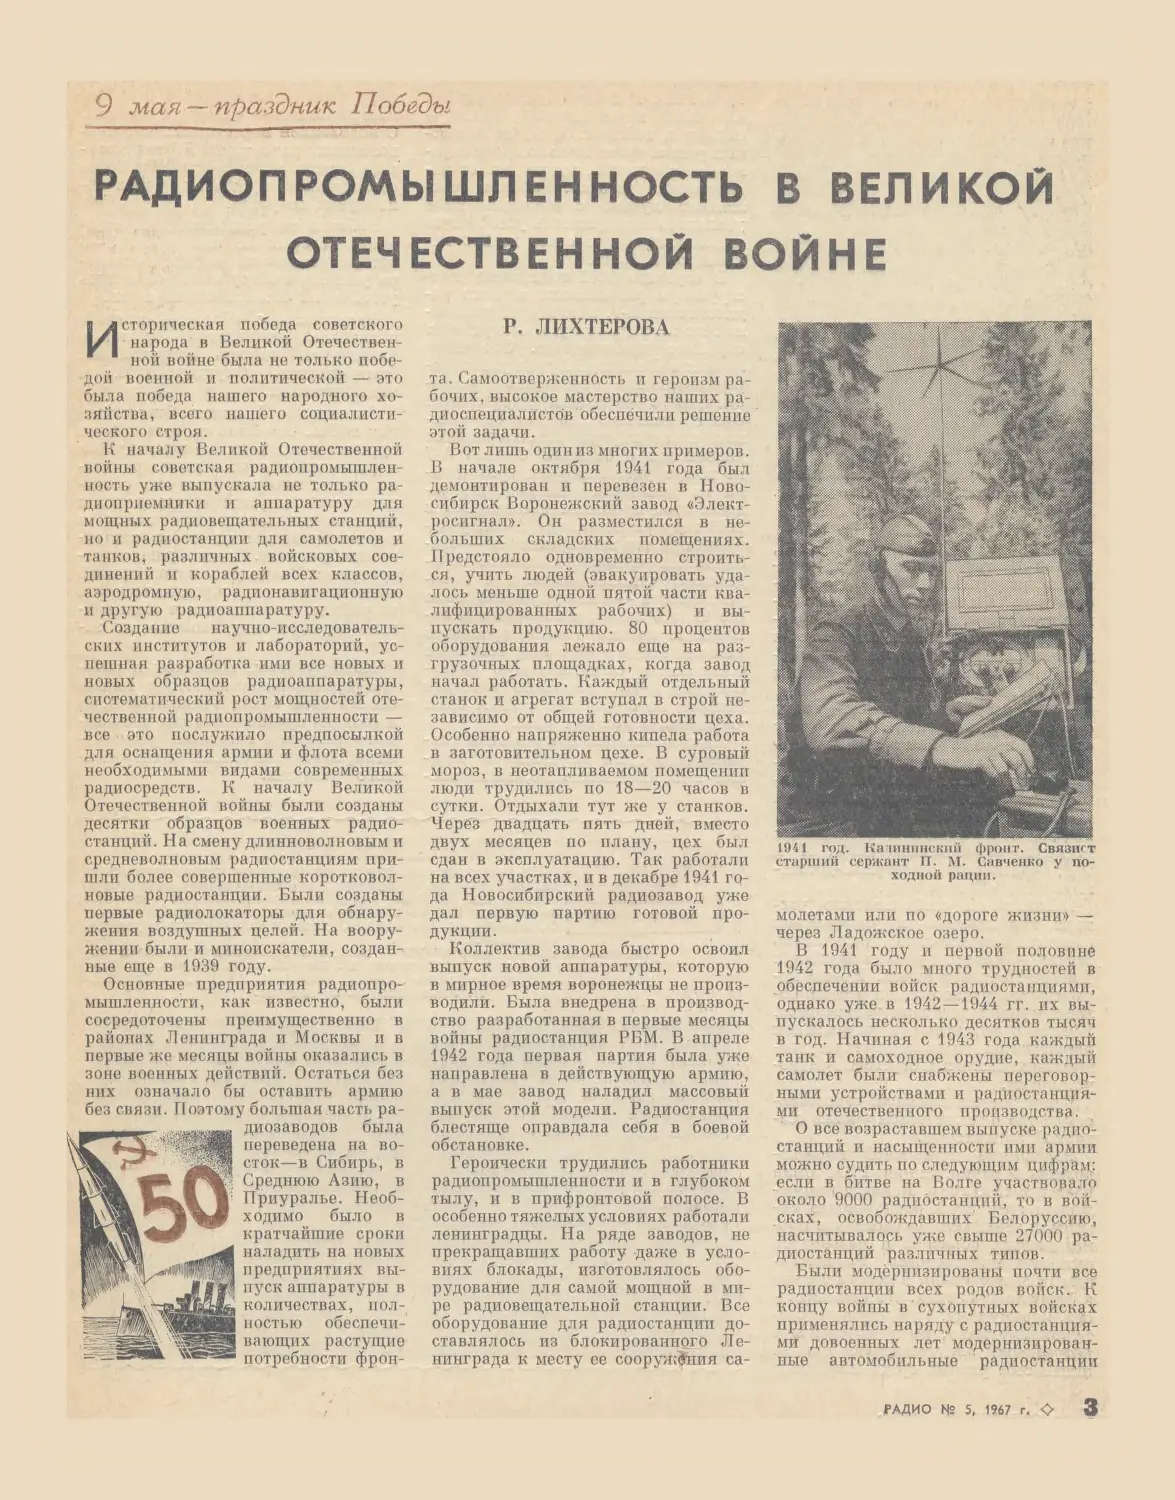 Р. Лихтерова —¦ Радиопромышленность в Великой Отечественной войне